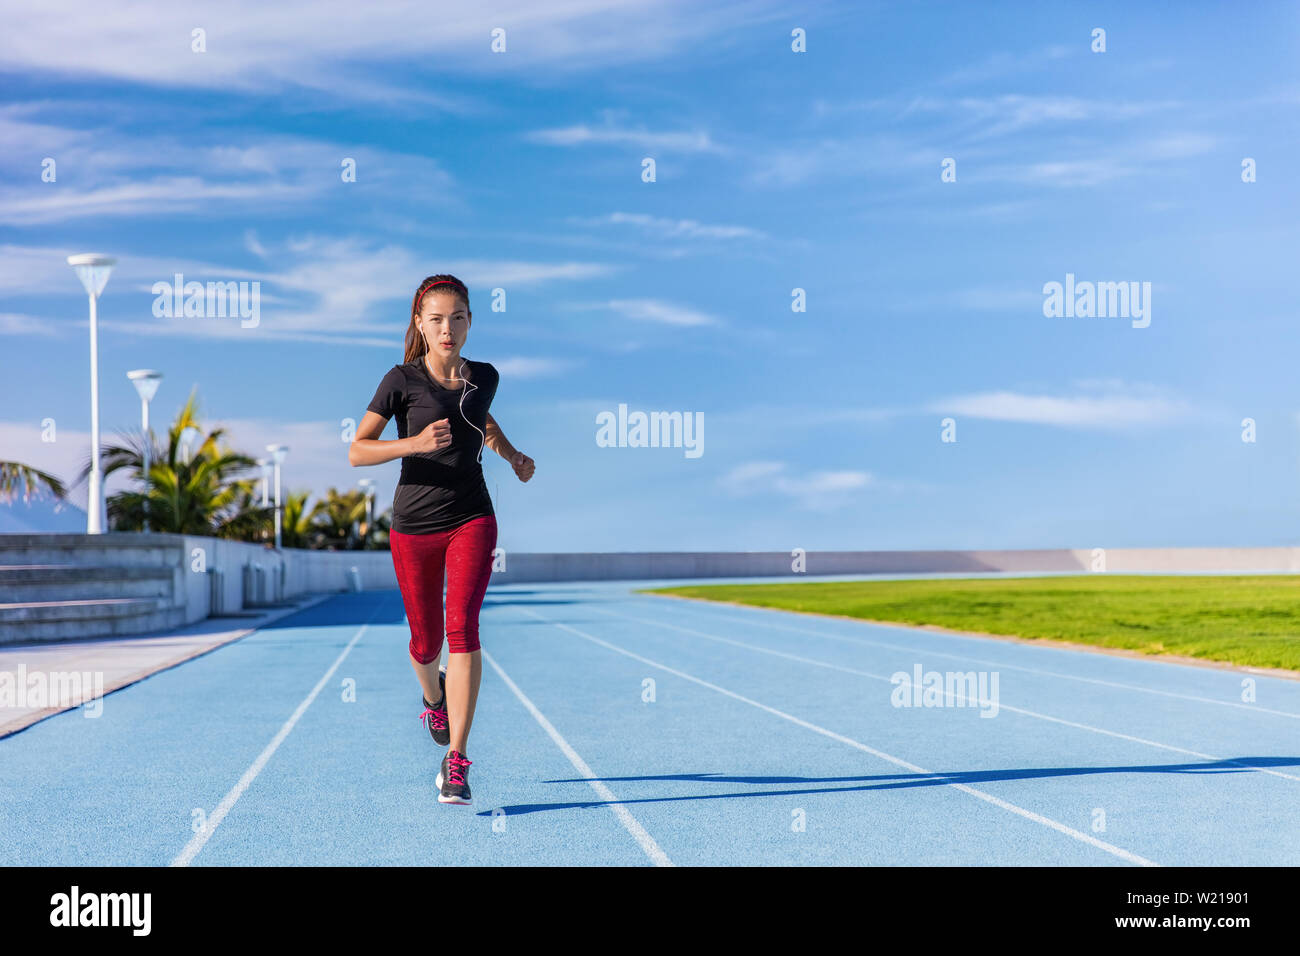 Weibliche asiatische Athleten runner auf blauen Titel im Freien Stadion läuft im Sommer. Sportliche Frau joggen Musik hören mit Kopfhörern training cardio für Gewichtverlust Erfolg. Wellness und Gesundheit. Stockfoto